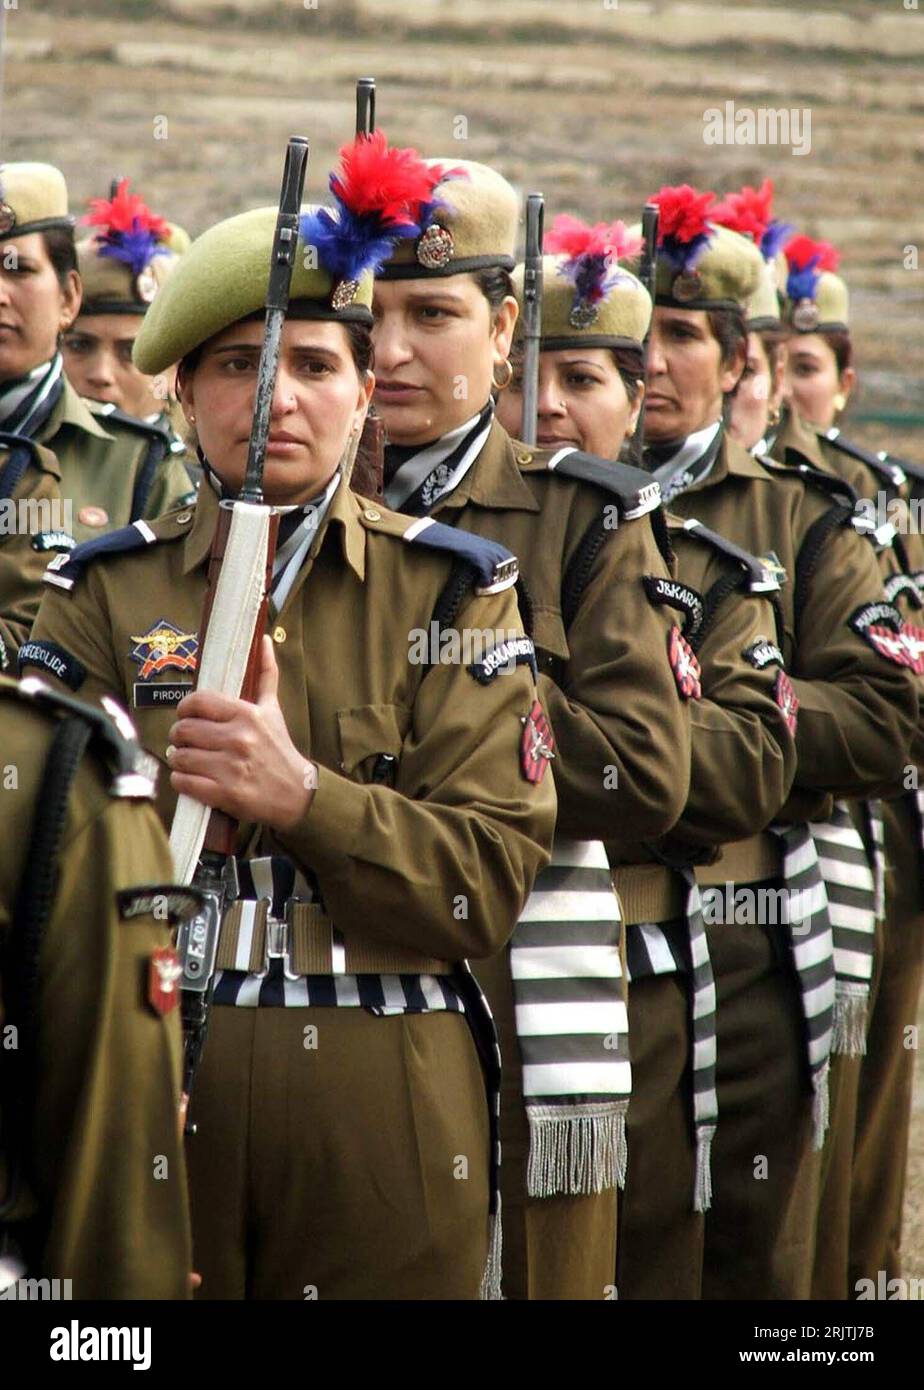 Bildnummer: 51695000 Datum: 24.01.2007 Copyright: imago/Xinhua Indische Polizistinnen marschieren während einer Probe für eine Parade zum Tag der Republik in Srinagar - PUBLICATIONxNOTxINxCHN, Personen; 2007, Srinagar, Kashmir, Kaschmir, Polizist, Polizistin, Polizisten, Feiertag, Nationalfeiertag, Frau, Inder, Inderin, Uniform, Uniformen,; , hoch, Kbdig, Gruppenbild, Close, Indien, , Polizei, Staat, Foto Stock